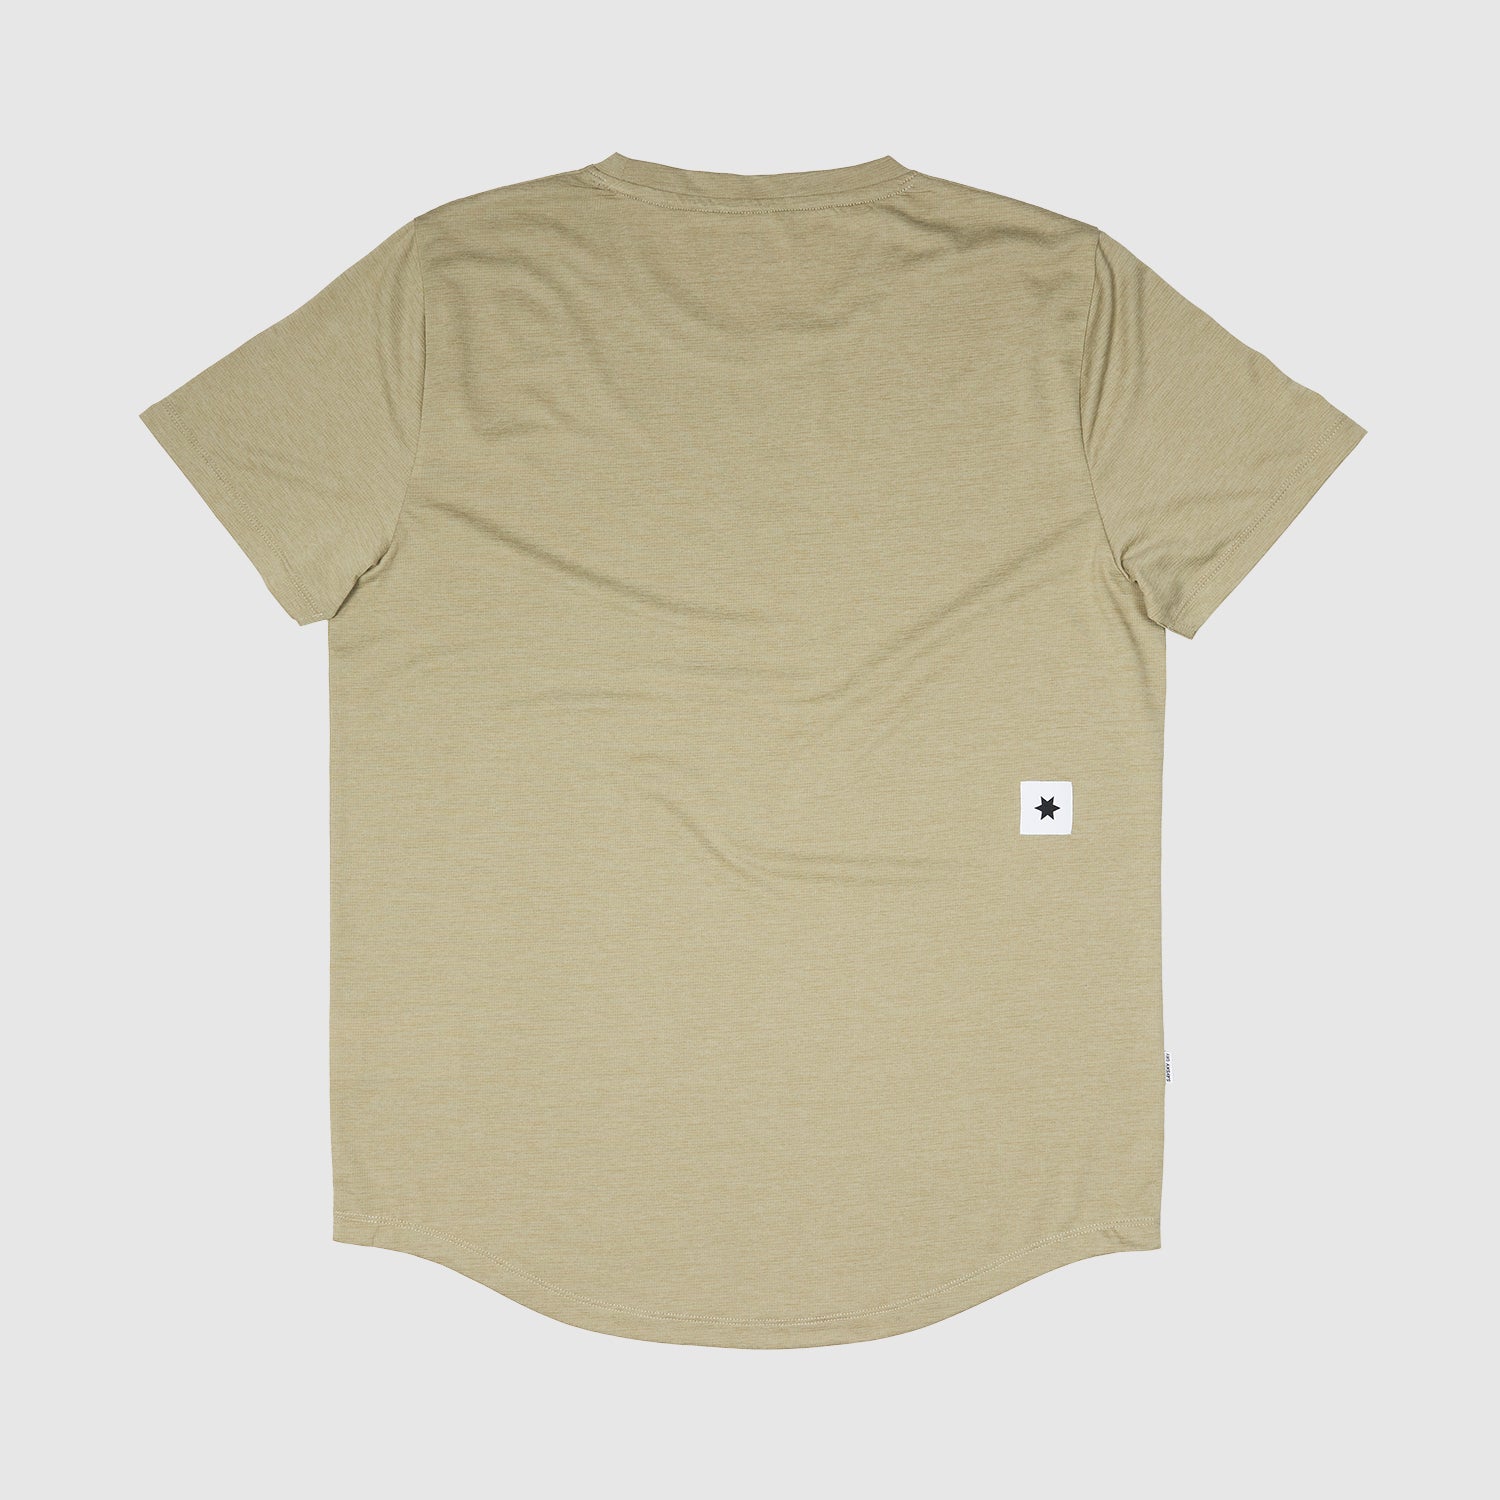 ランニングTシャツ JMRSS15c801 Combat Logo T-shirt - Beige [メンズ]